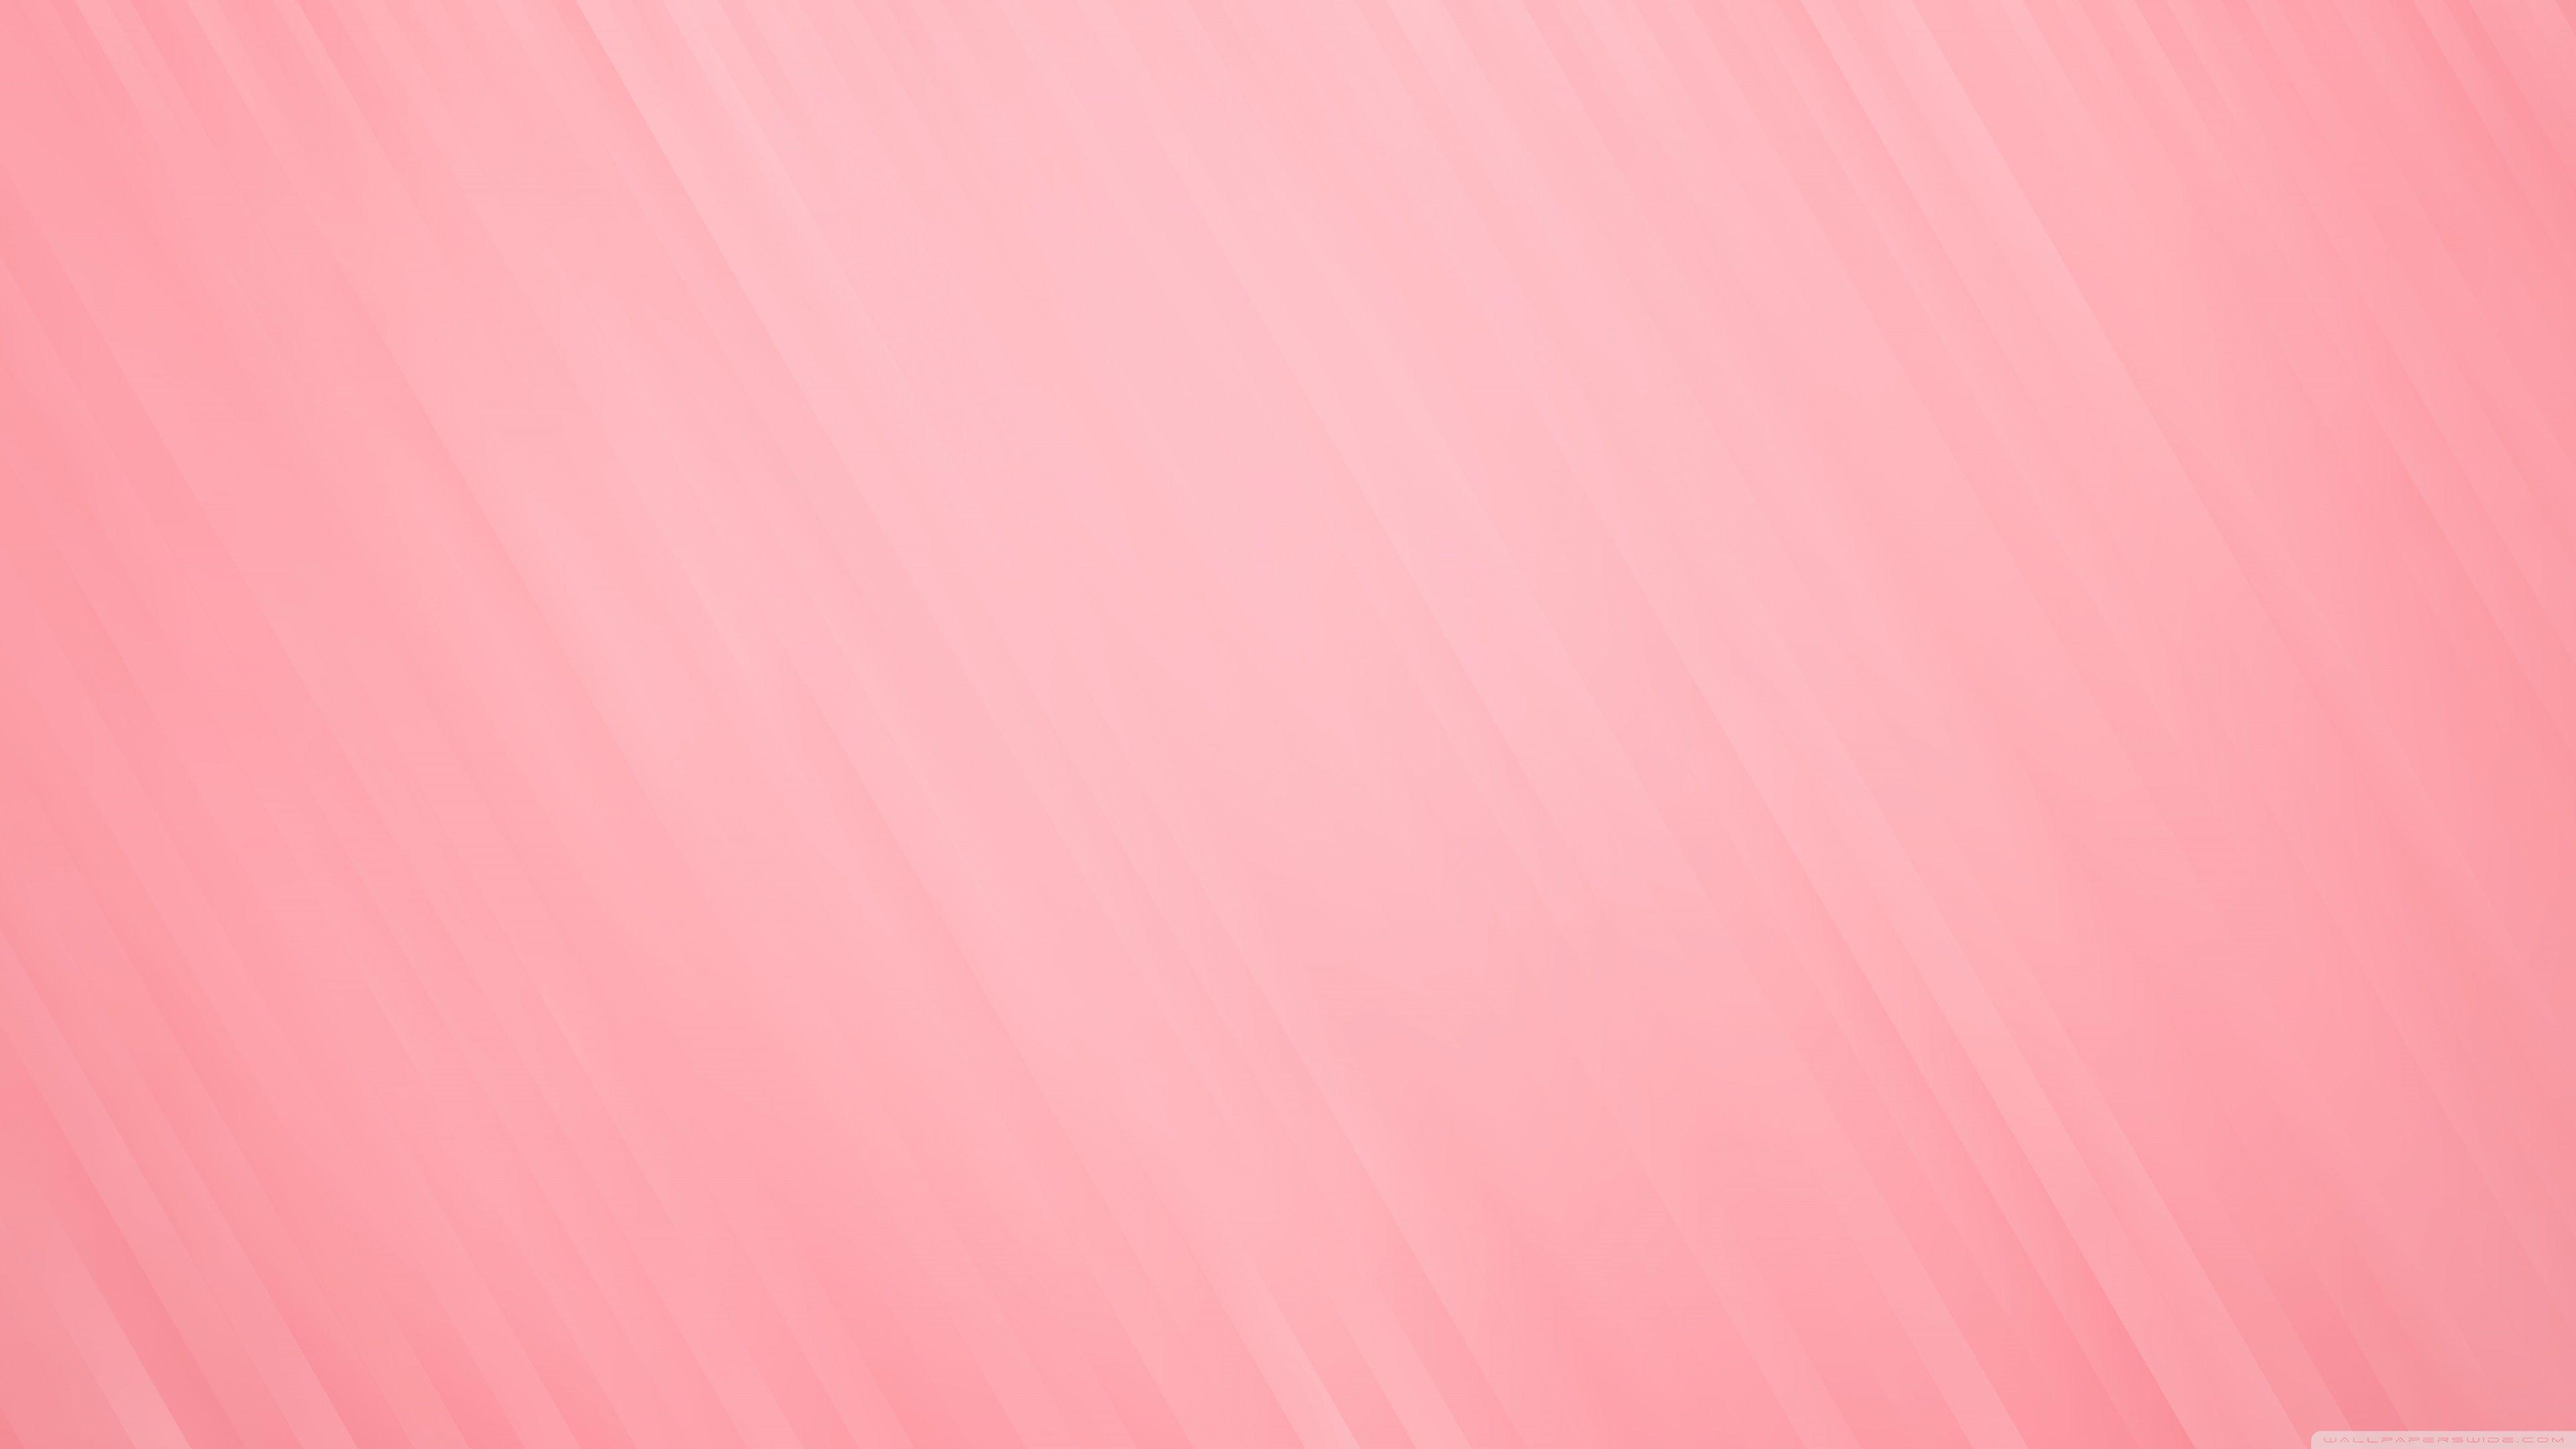 4K Pink Wallpaper Free 4K Pink Background